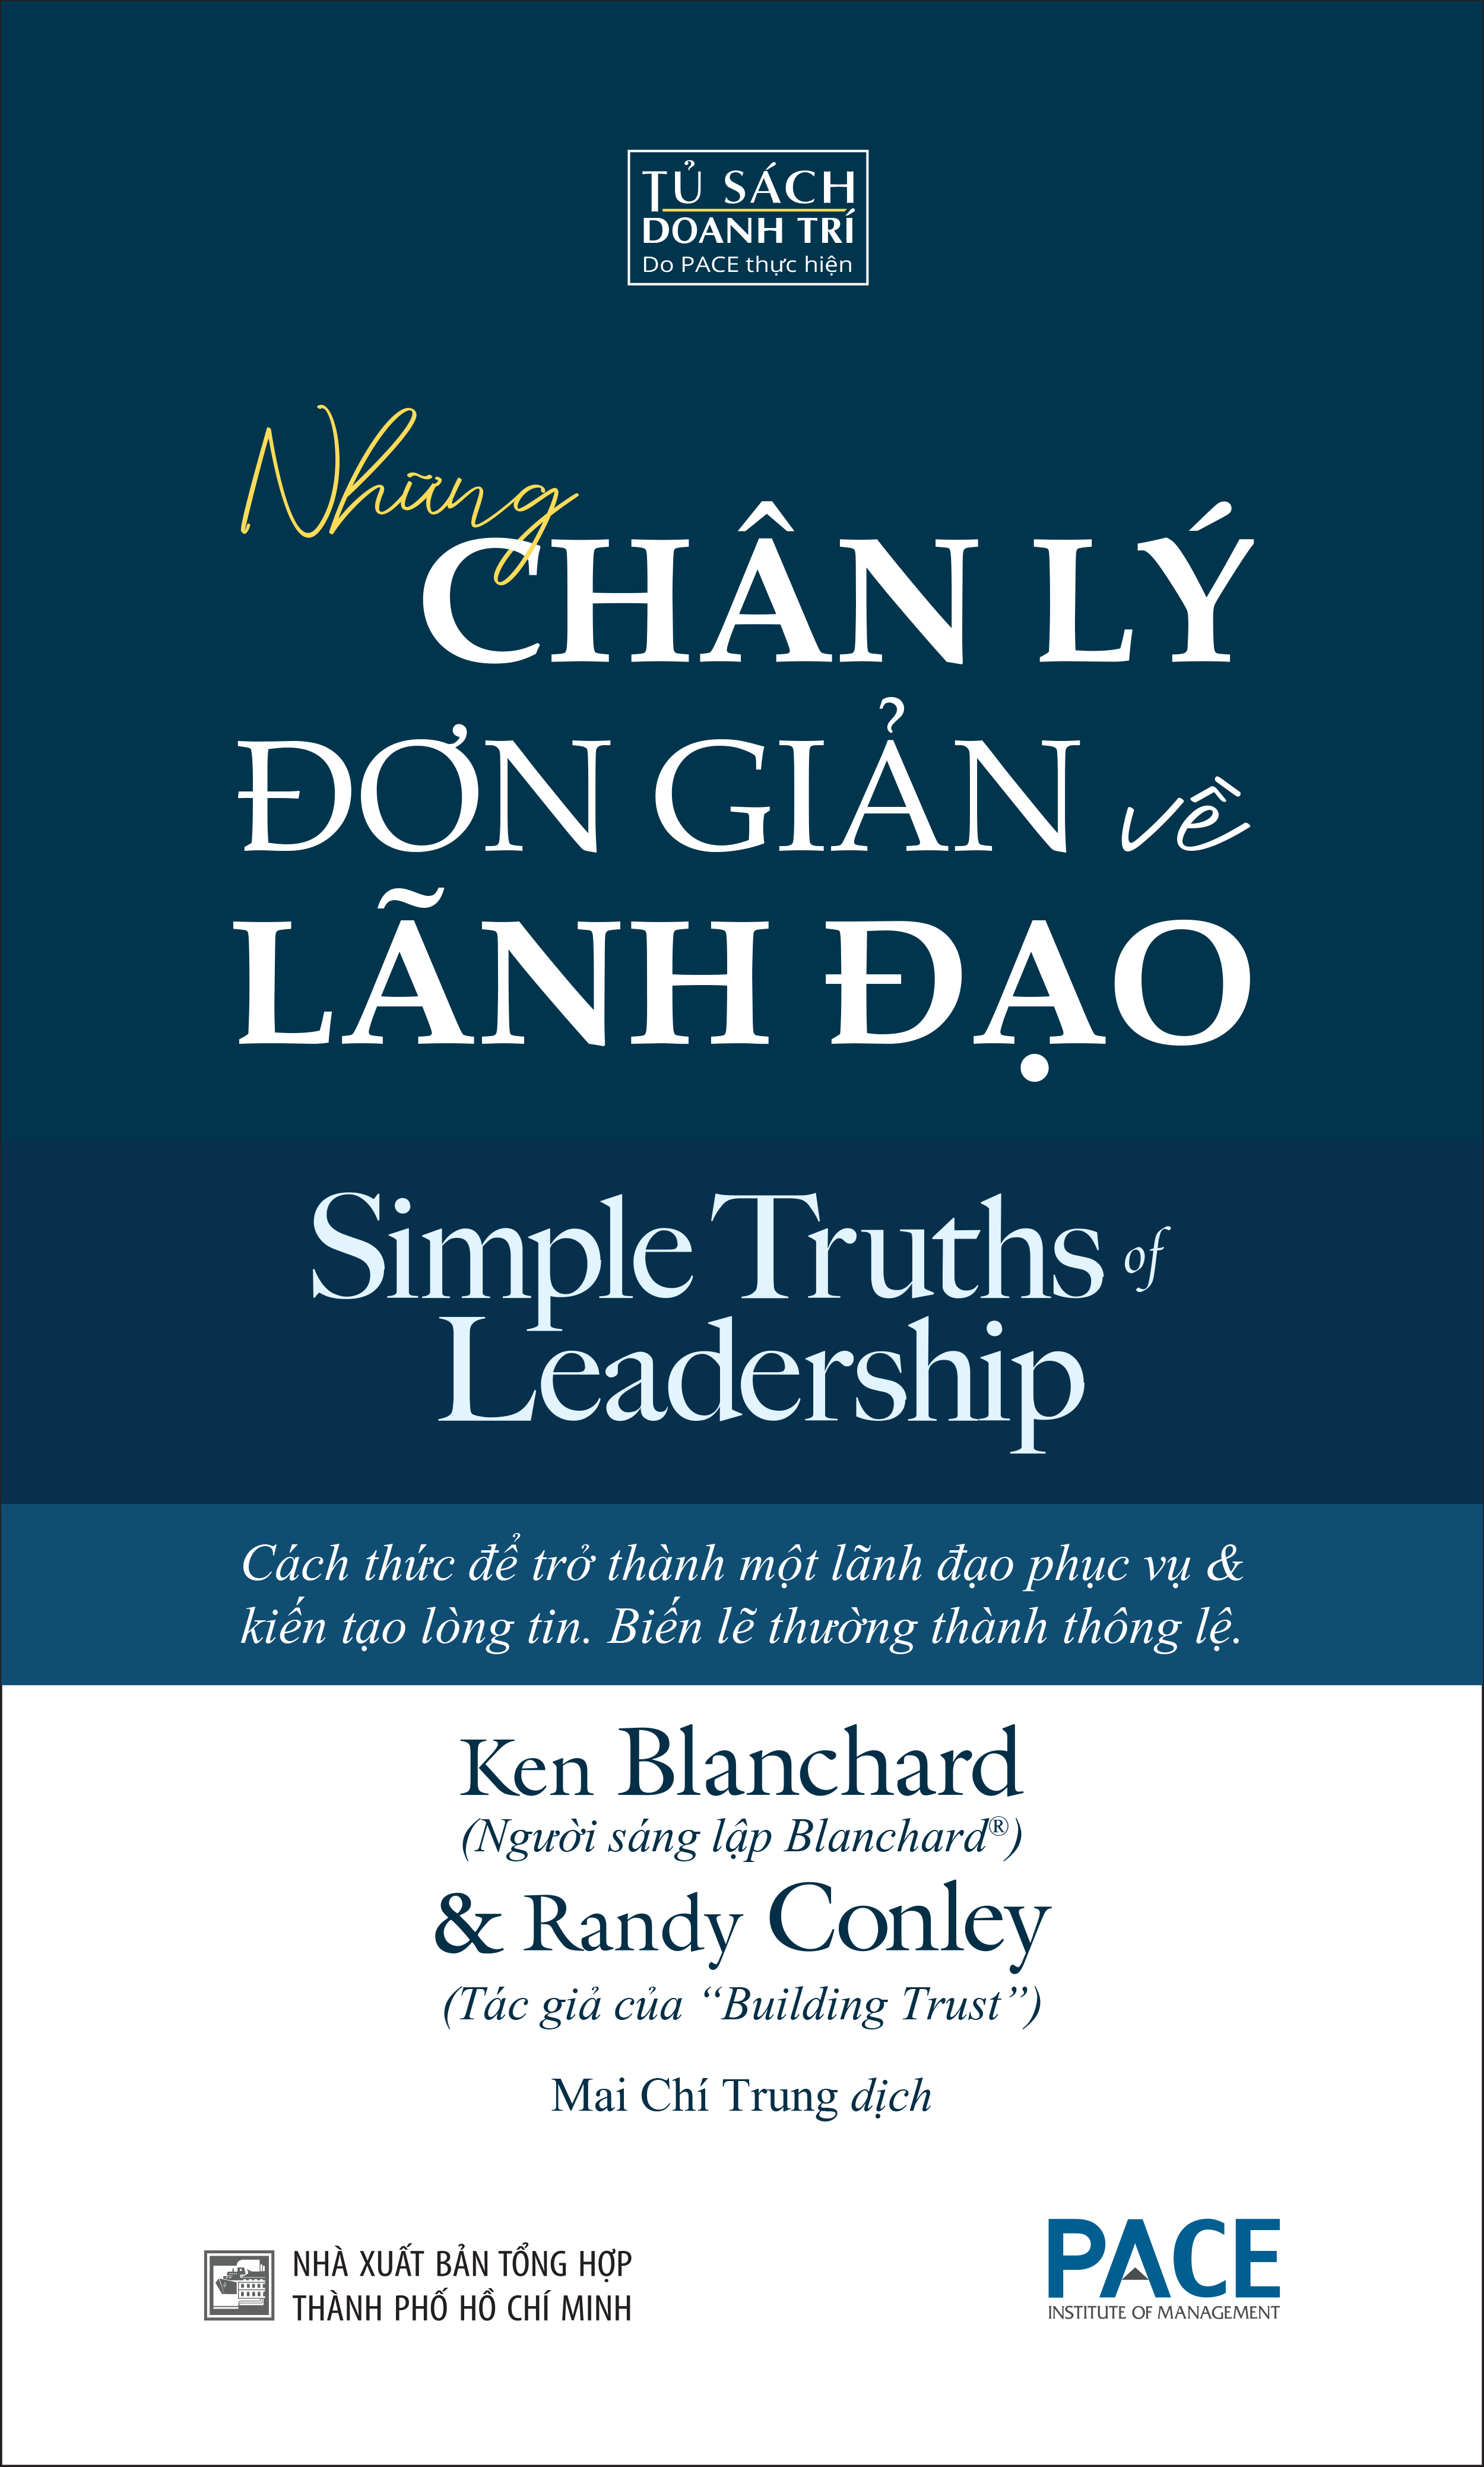 NHỮNG CHÂN LÝ ĐƠN GIẢN VỀ LÃNH ĐẠO (Simple Truths of Leadership) - Ken Blanchard &amp; Randy Conley - Mai Chí Trung dịch - (bìa mềm)